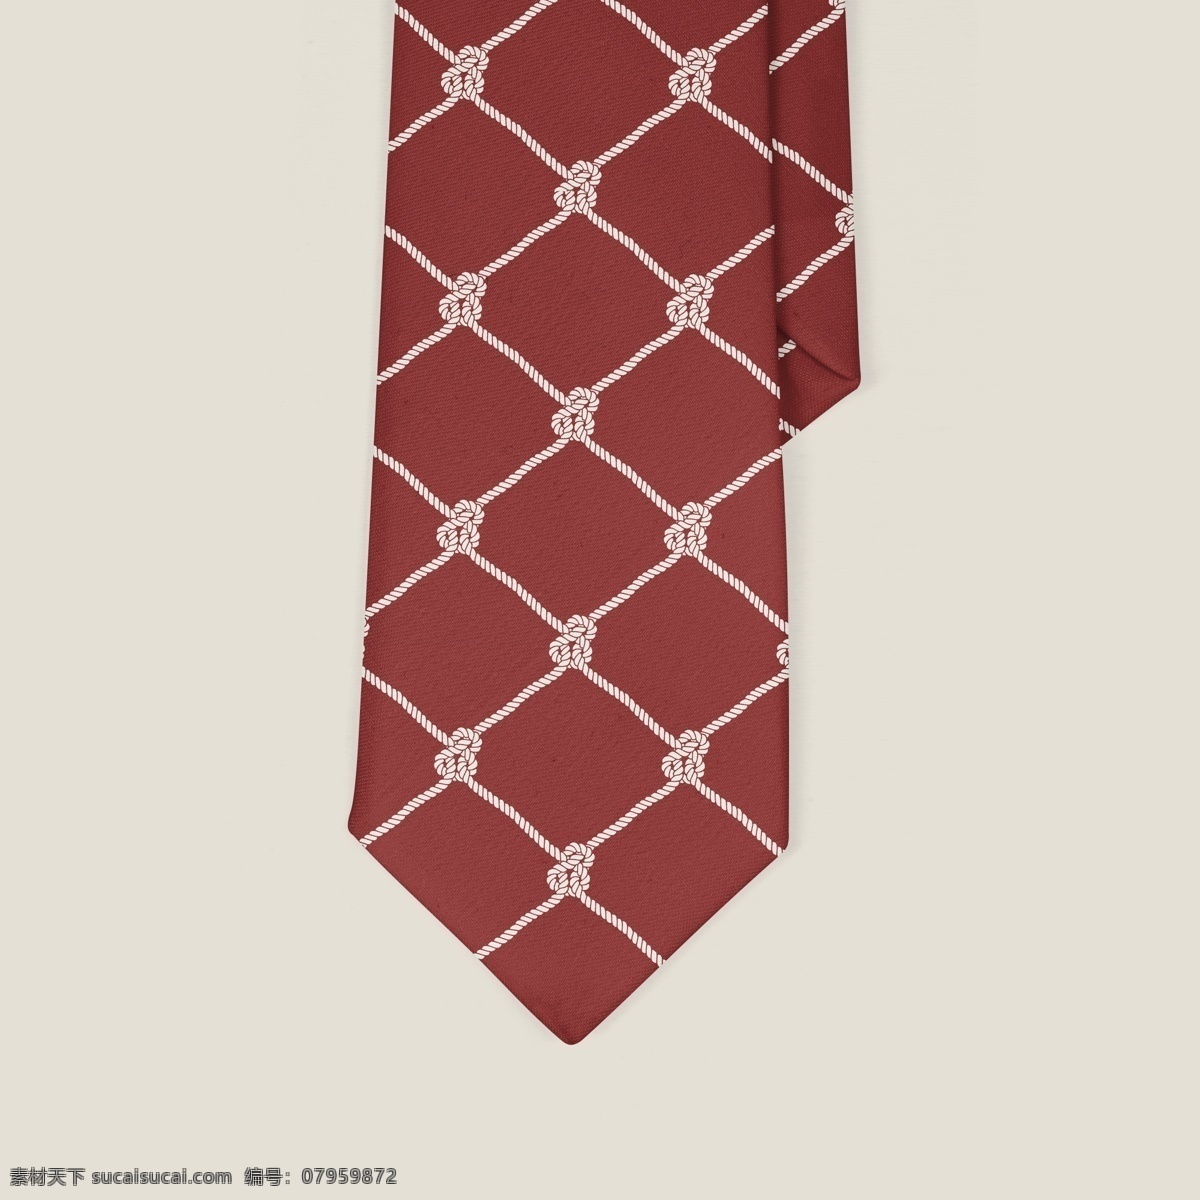 领带 样机 效果图 领带样机 领带效果图 领带图案设计 领带设计效果 领带展示 领带贴图 领带智能贴图 领带纹理 样机效果贴图 生活百科 生活用品